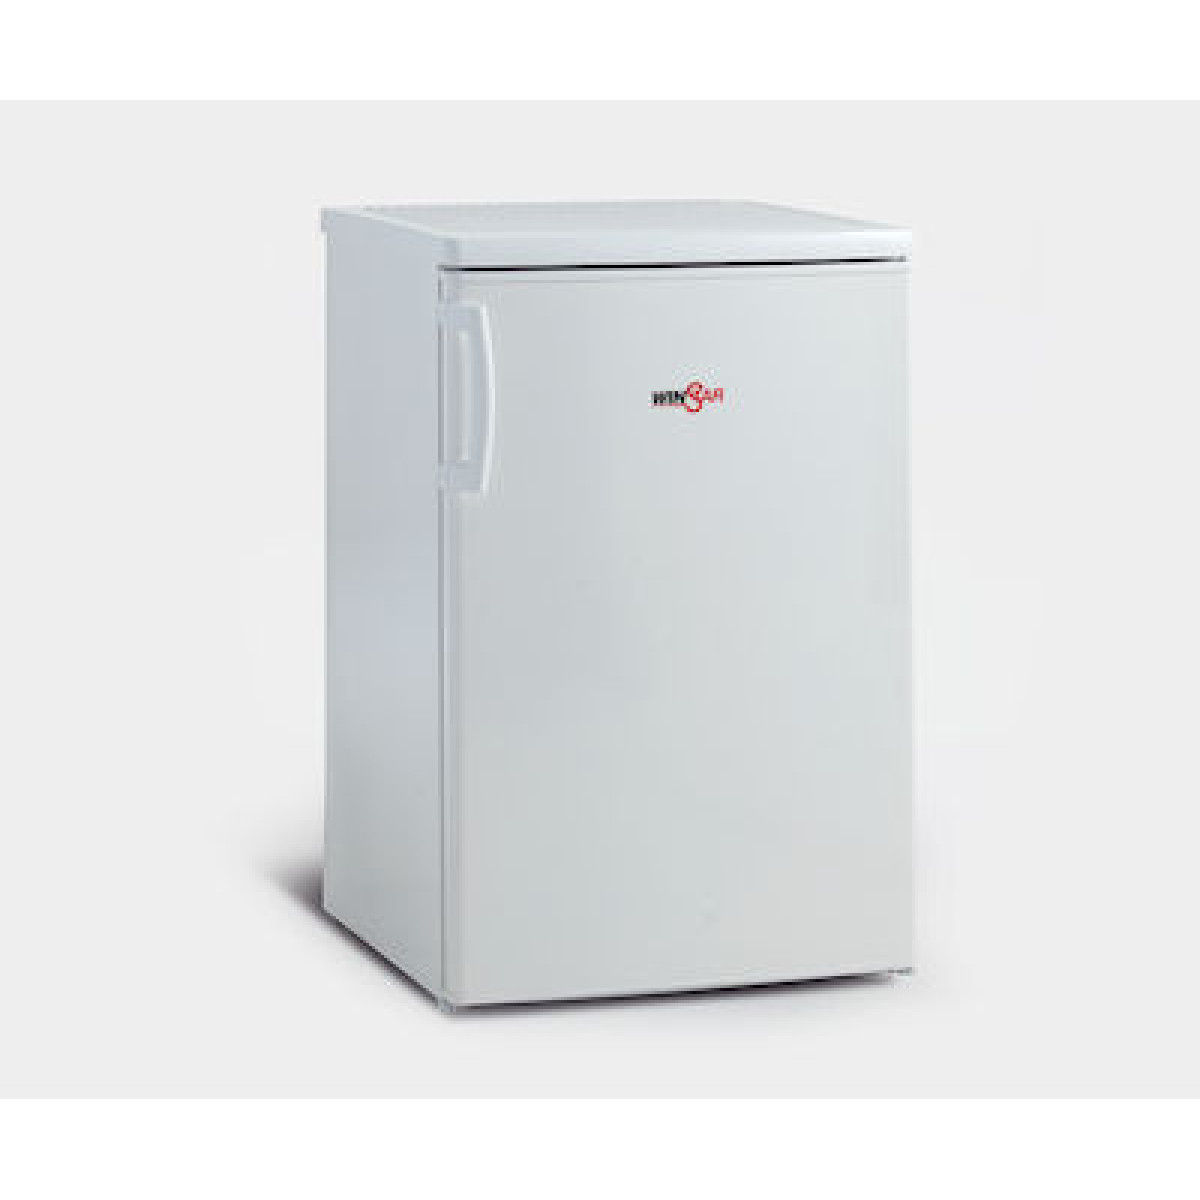 Ψυγείο Μονόπορτο Winstar MRF 82 75lt Υ84.2xΠ47.5xΒ44.8εκ. Ψυγεία μονόπορτα